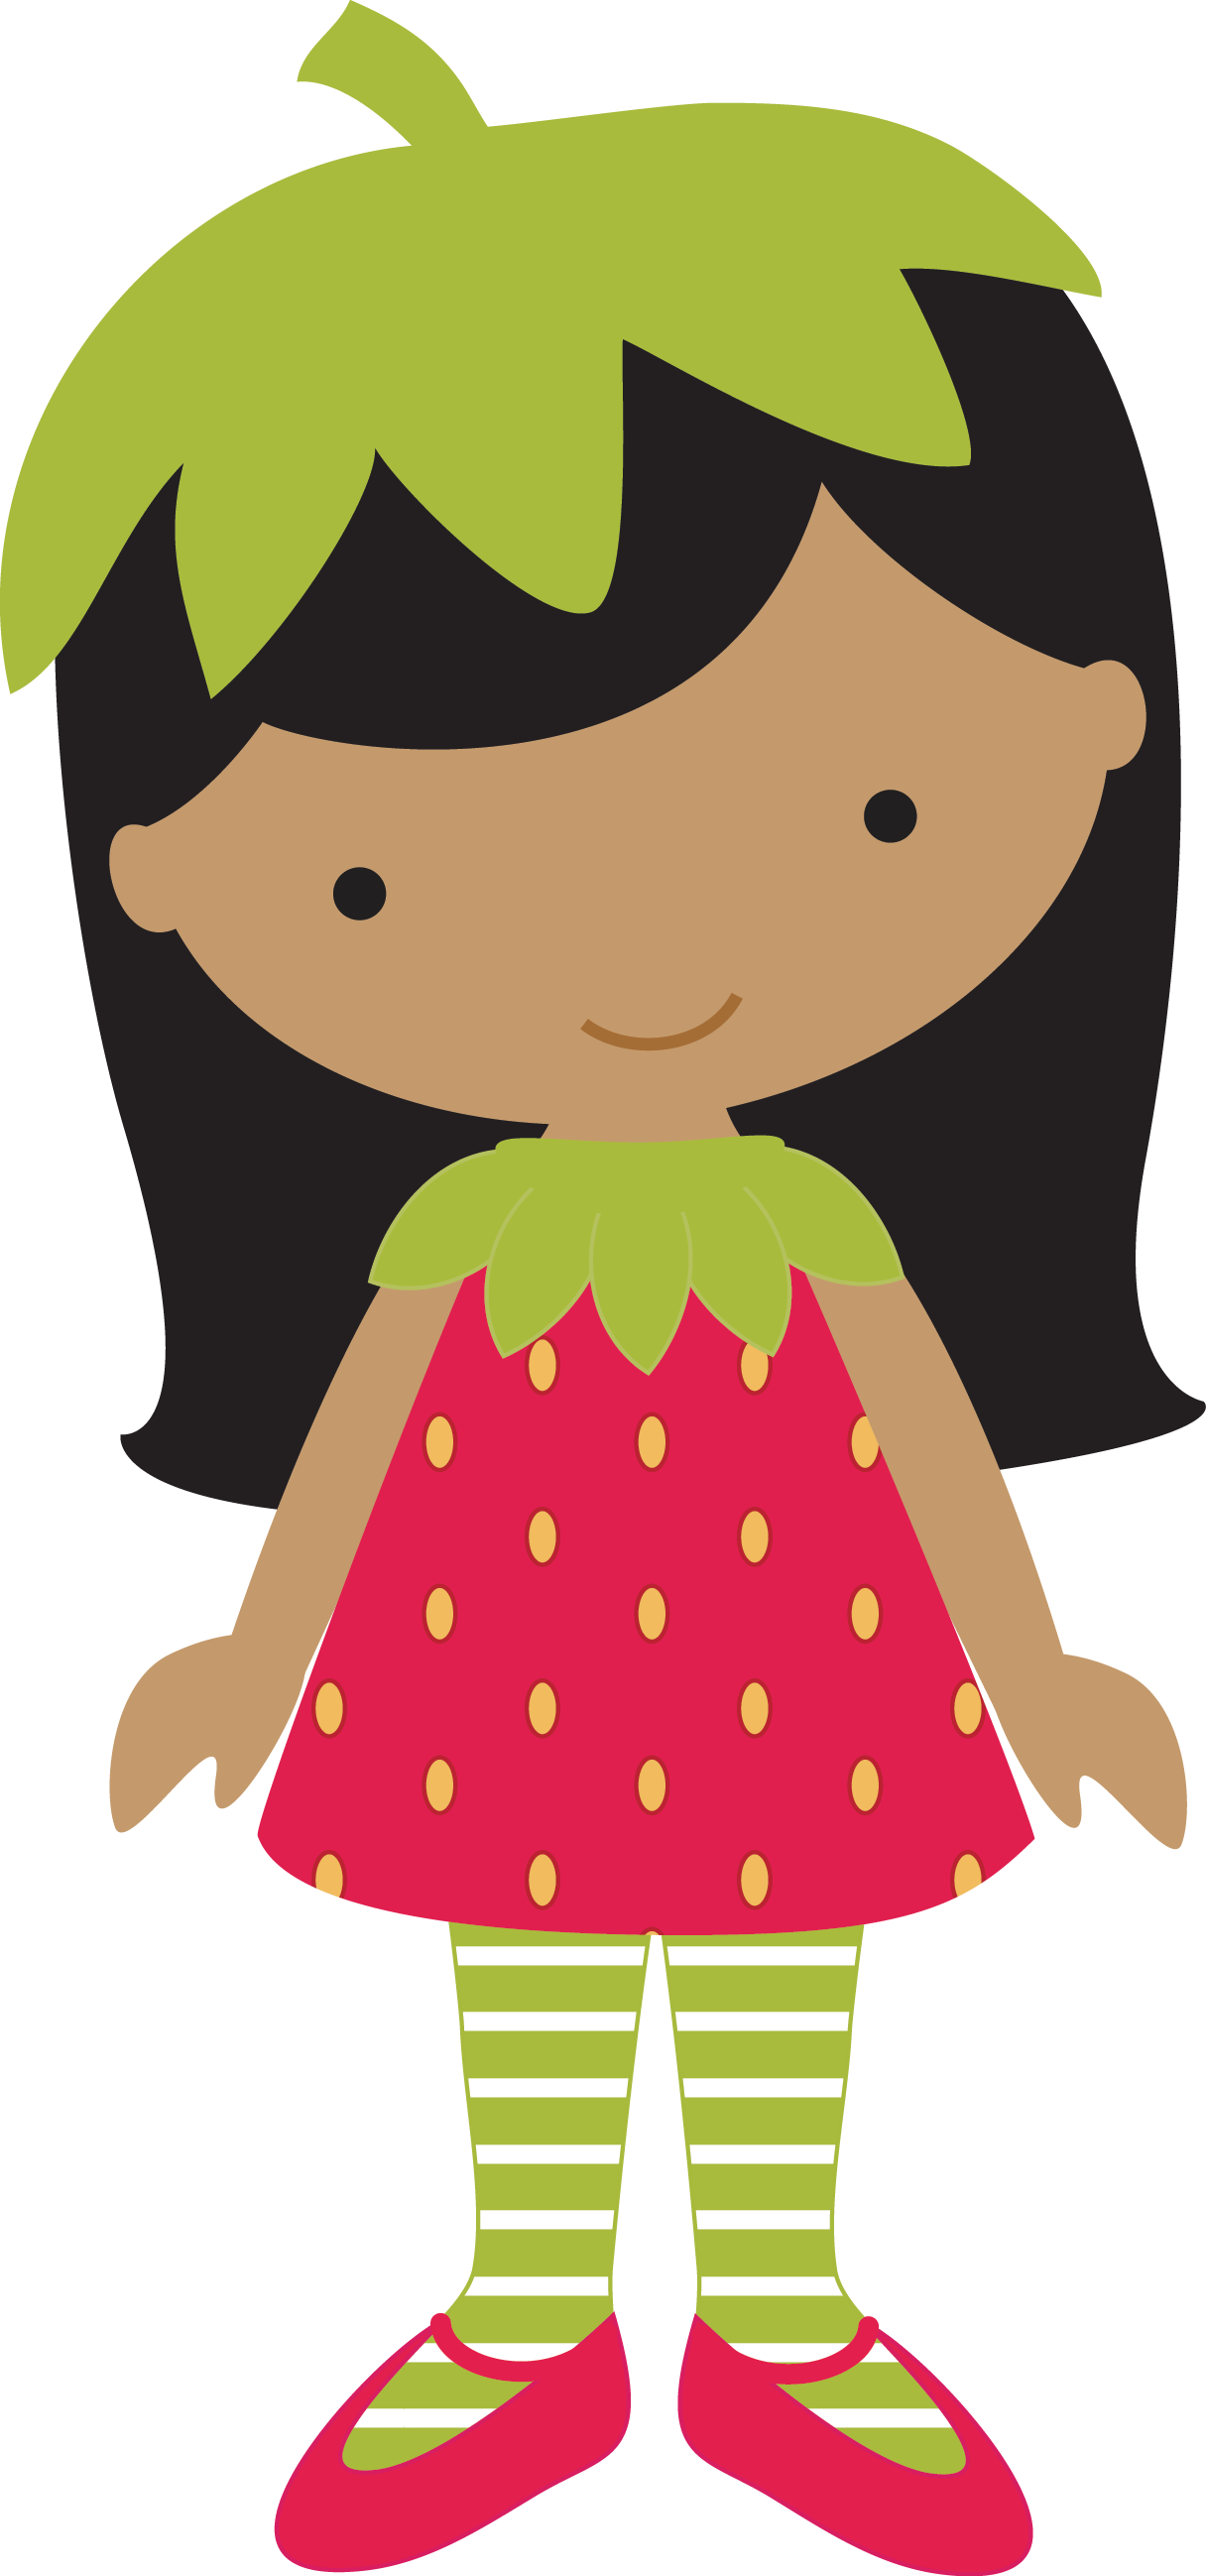 Strawberries strawberry girl